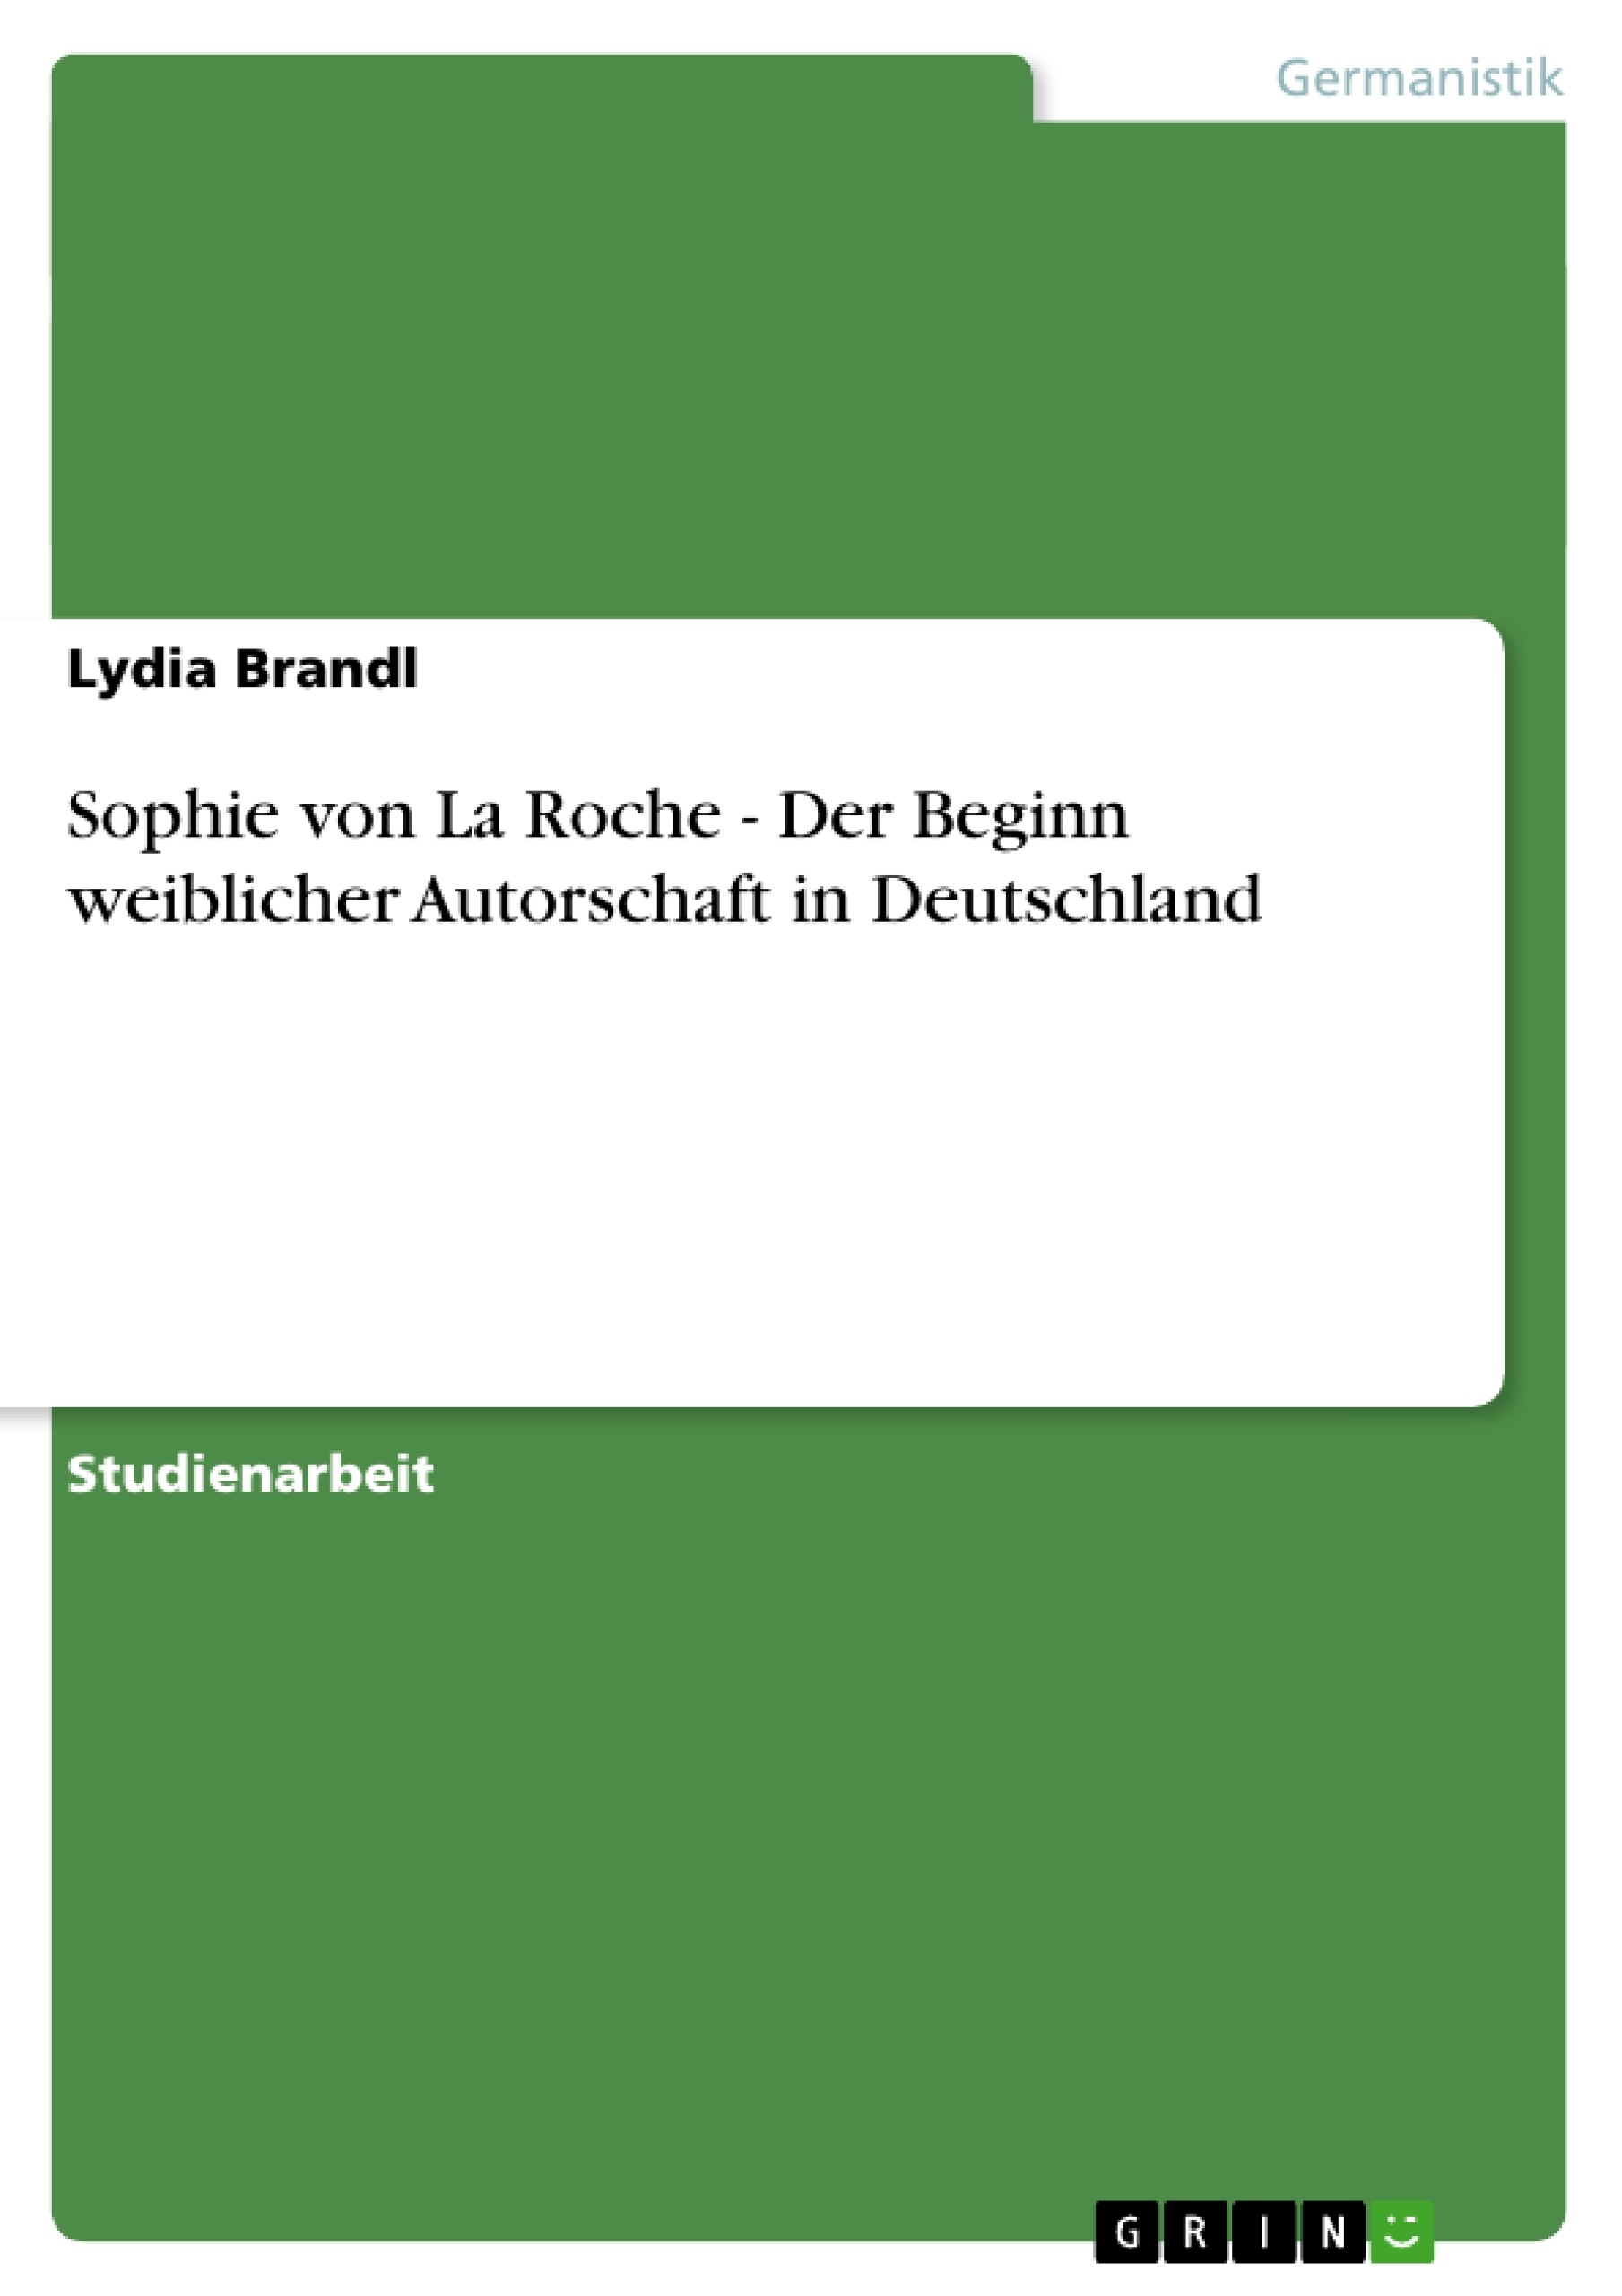 Título: Sophie von La Roche - Der Beginn weiblicher Autorschaft in Deutschland